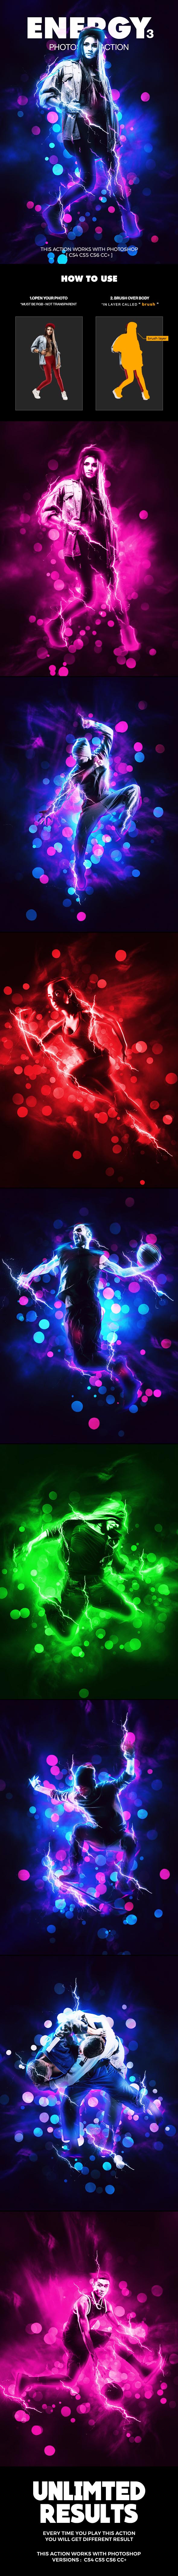 超酷的人物炫光闪电粒子特效PS动作下载 Energy 3 Photoshop Action [atn]插图